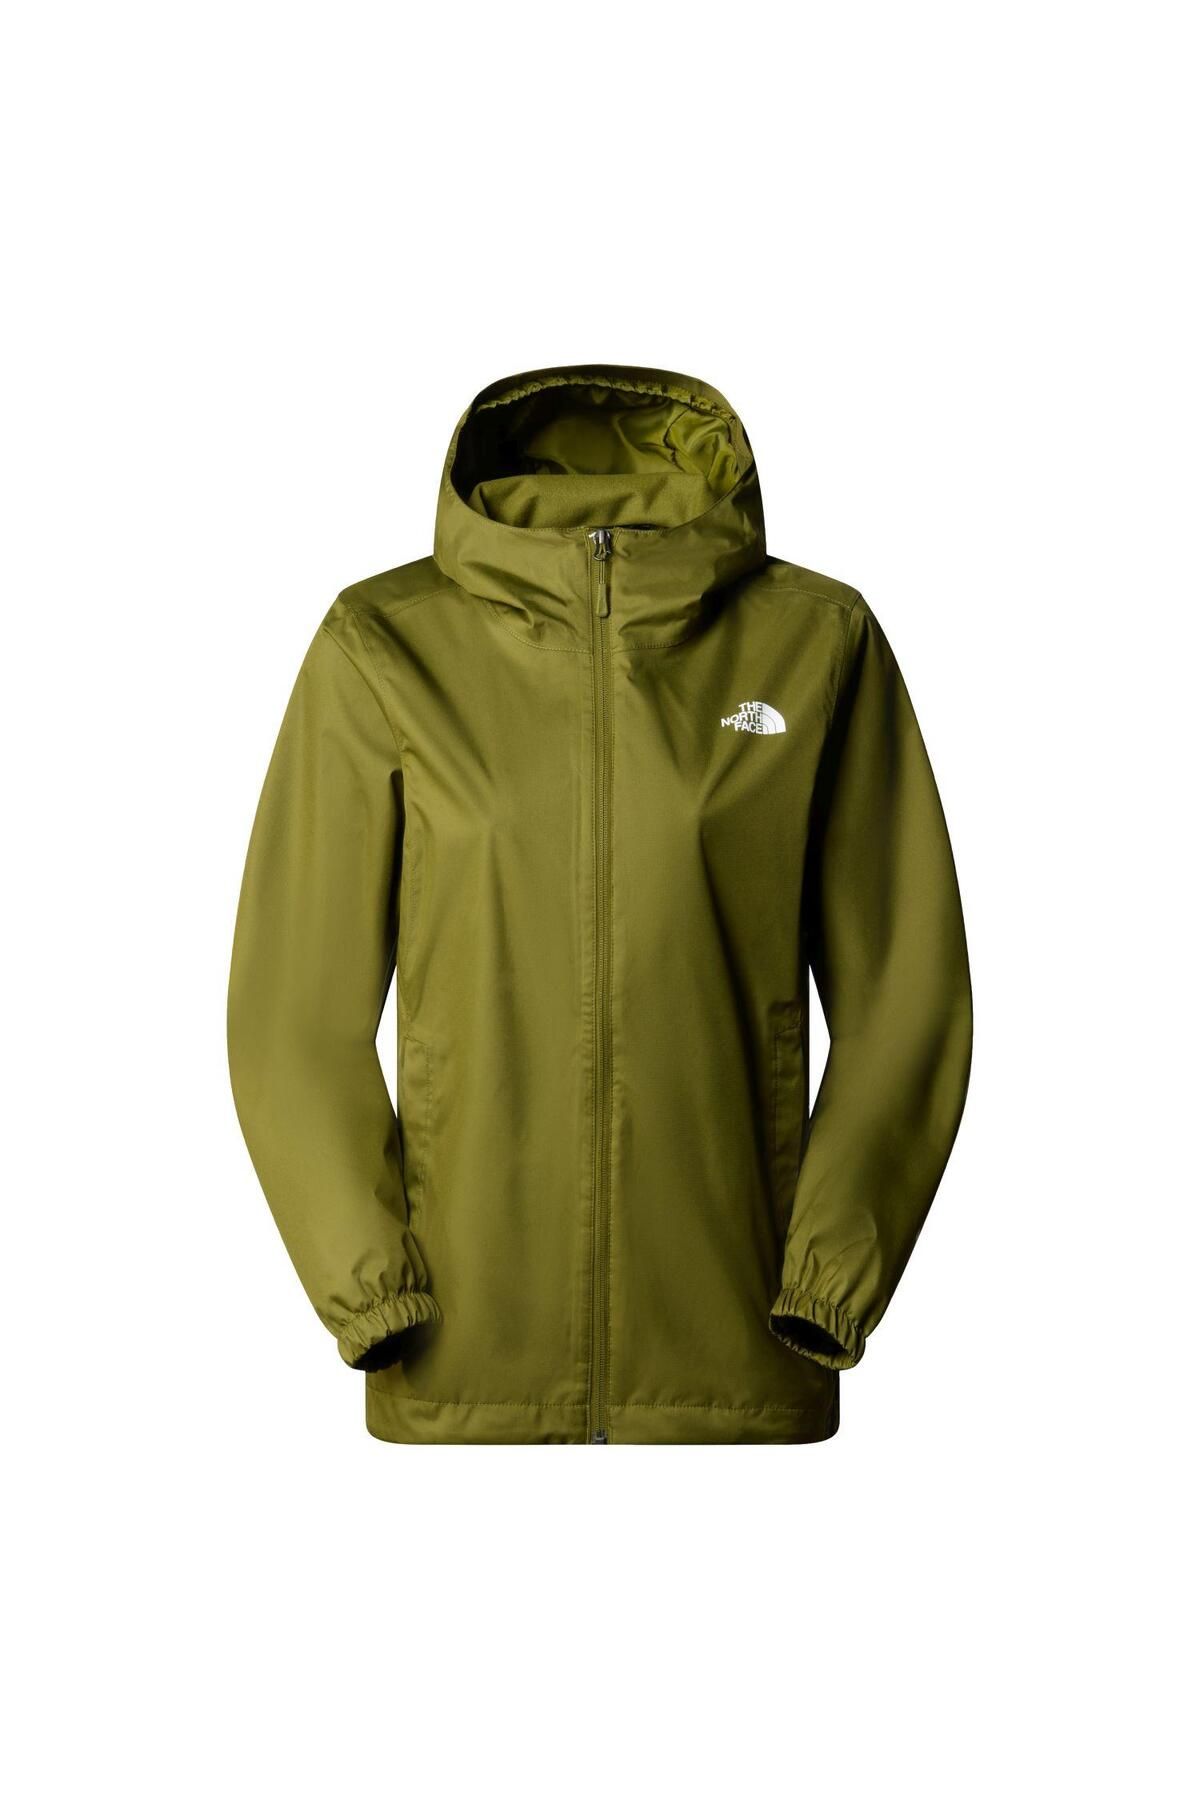 The North Face W Quest Jacket - Eu Ceket Nf00a8bapıb1 Yeşil-s